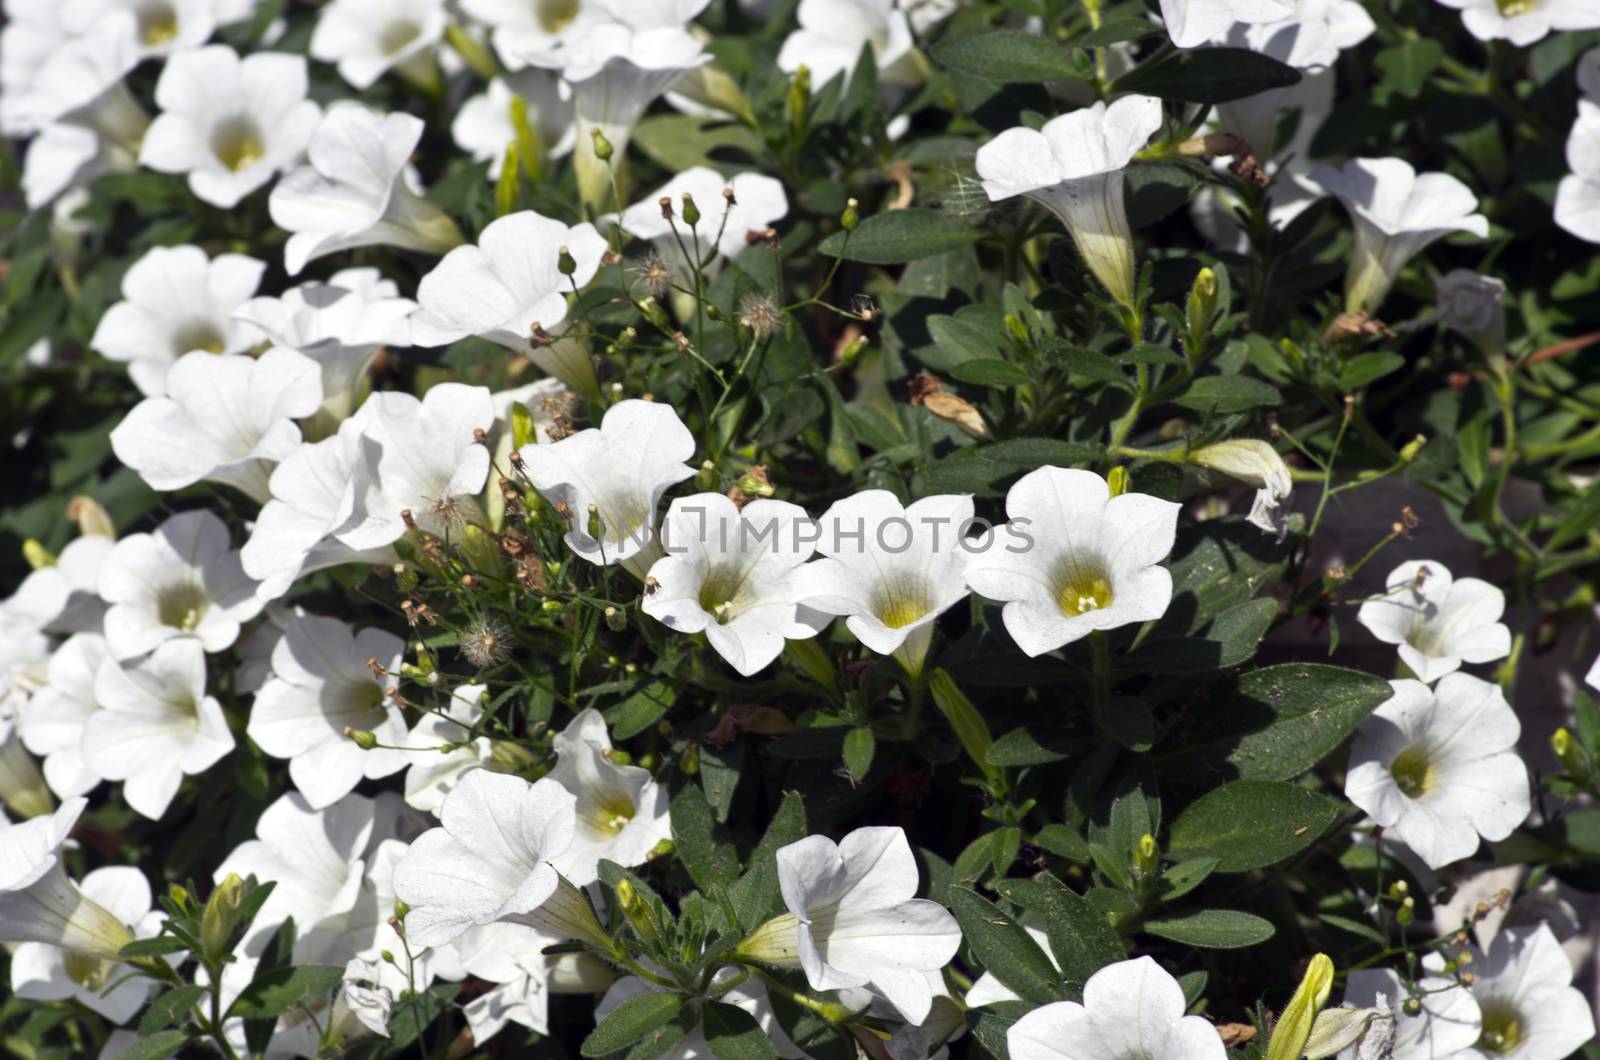 Close-up flowers of white petunias